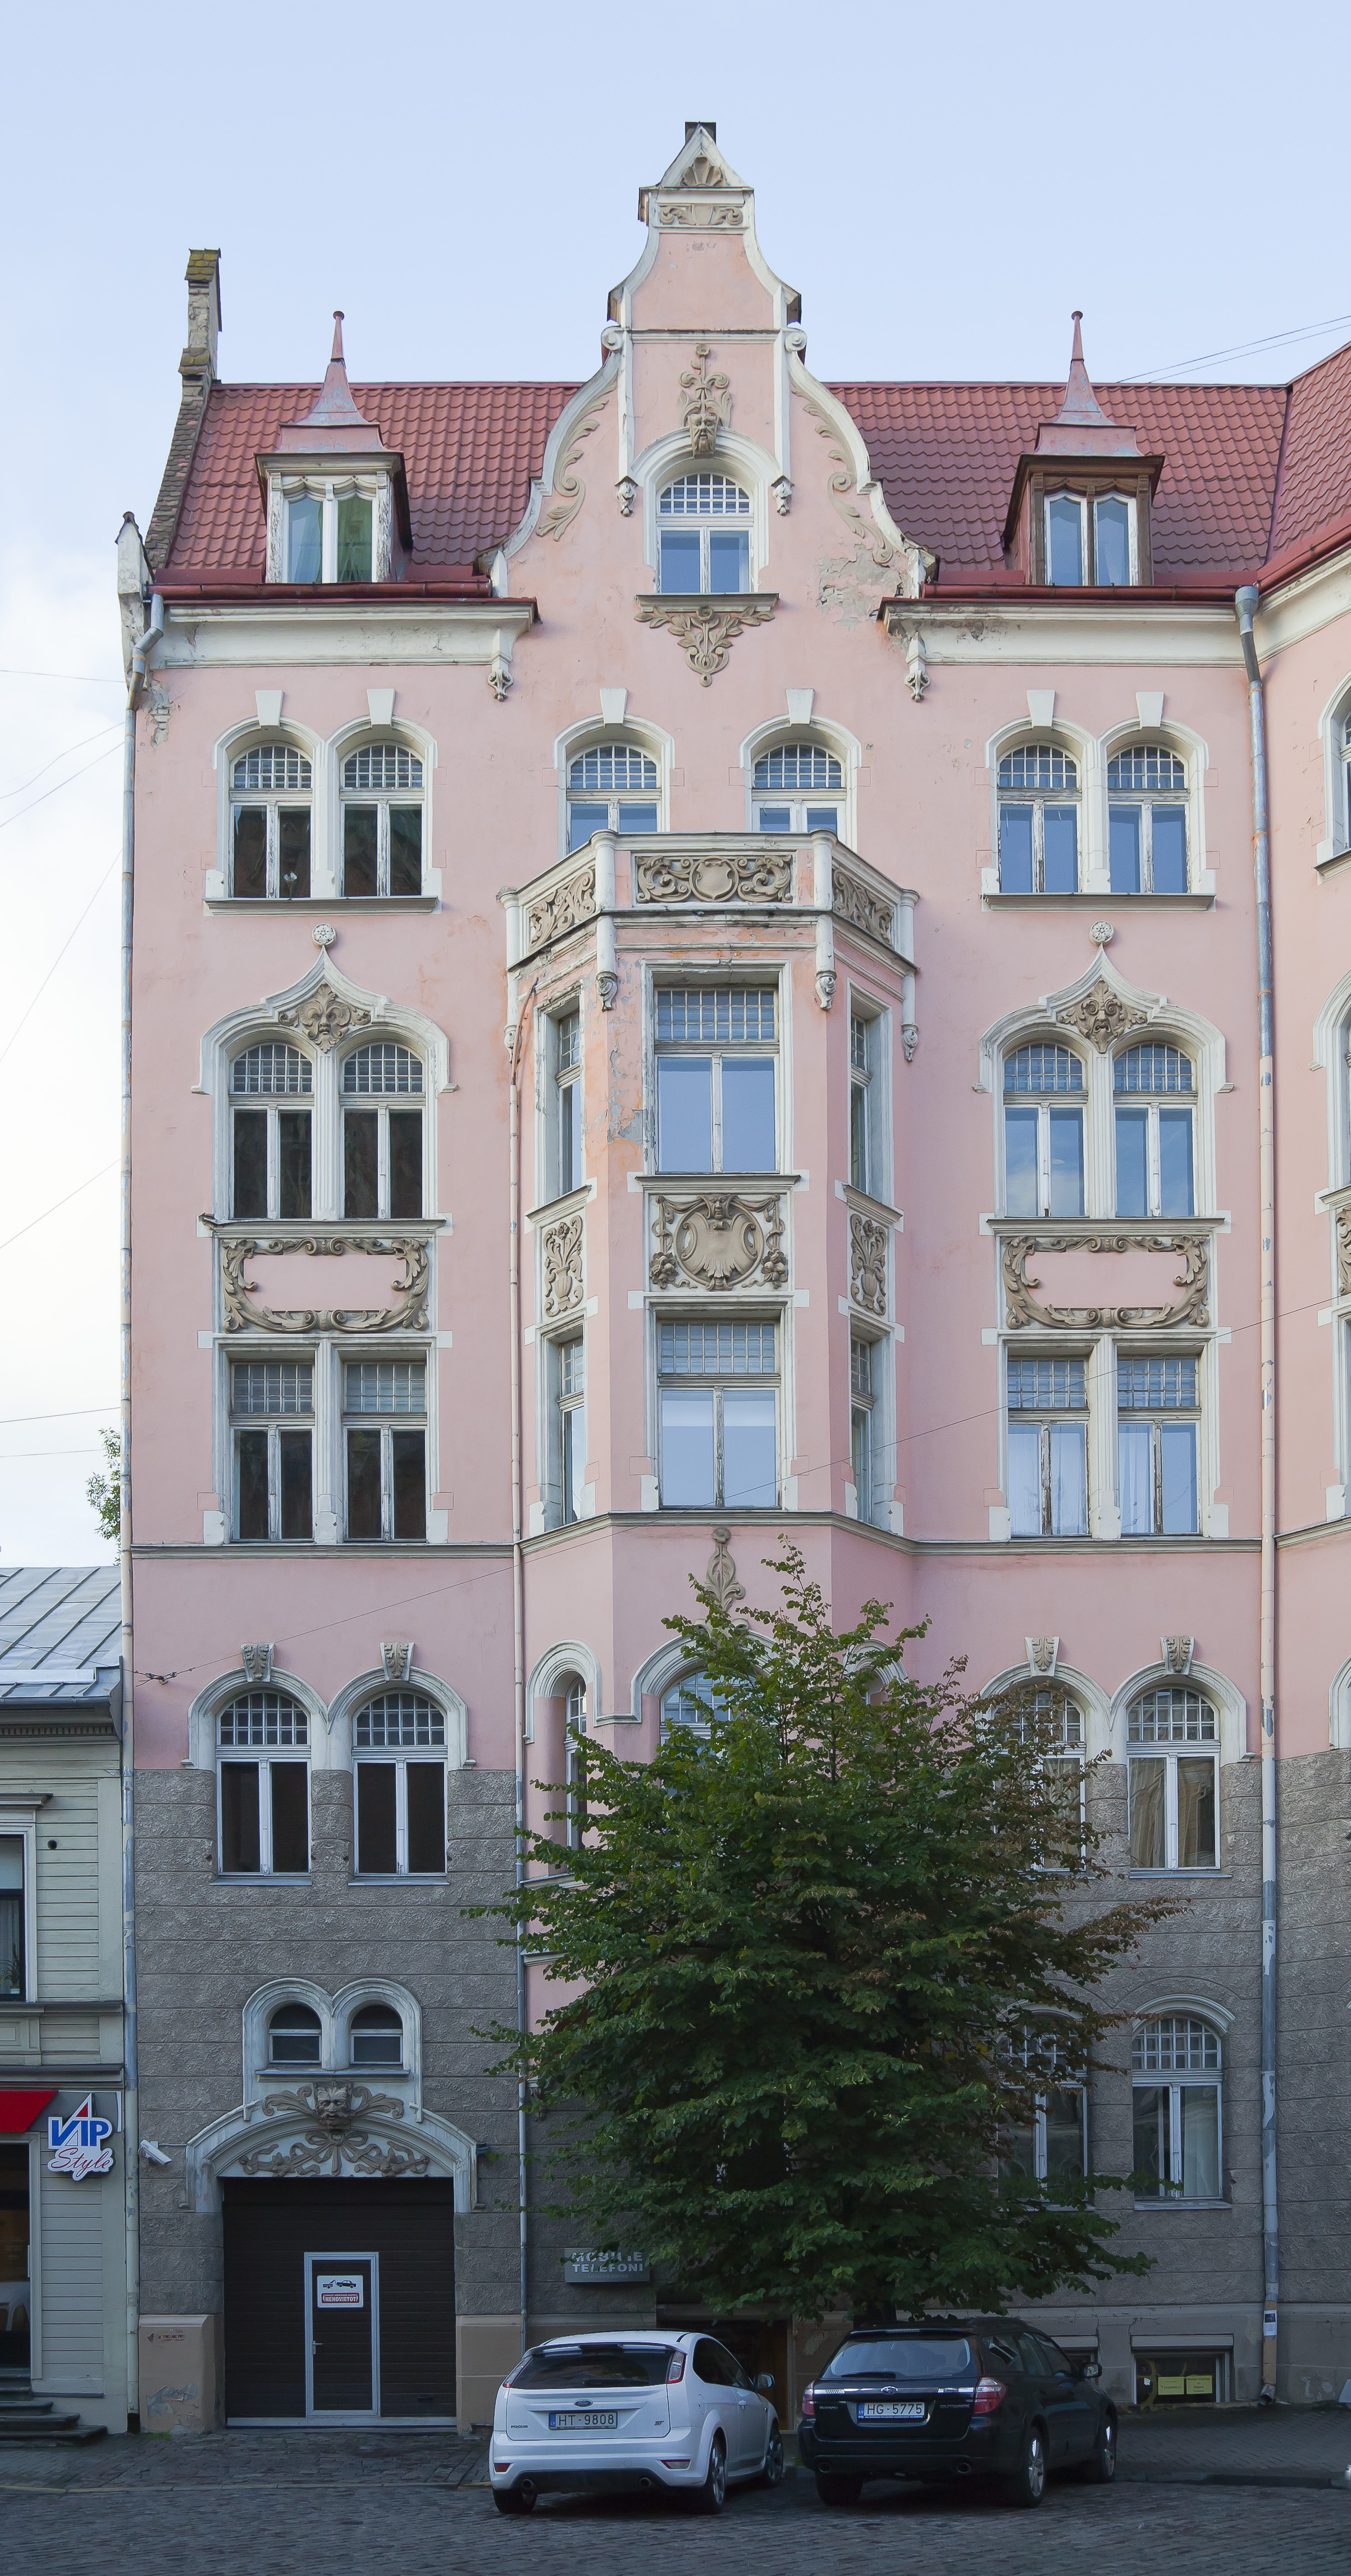 Edificio en Gertrudes iela, Riga, Letonia, 2012-08-07, DD 01